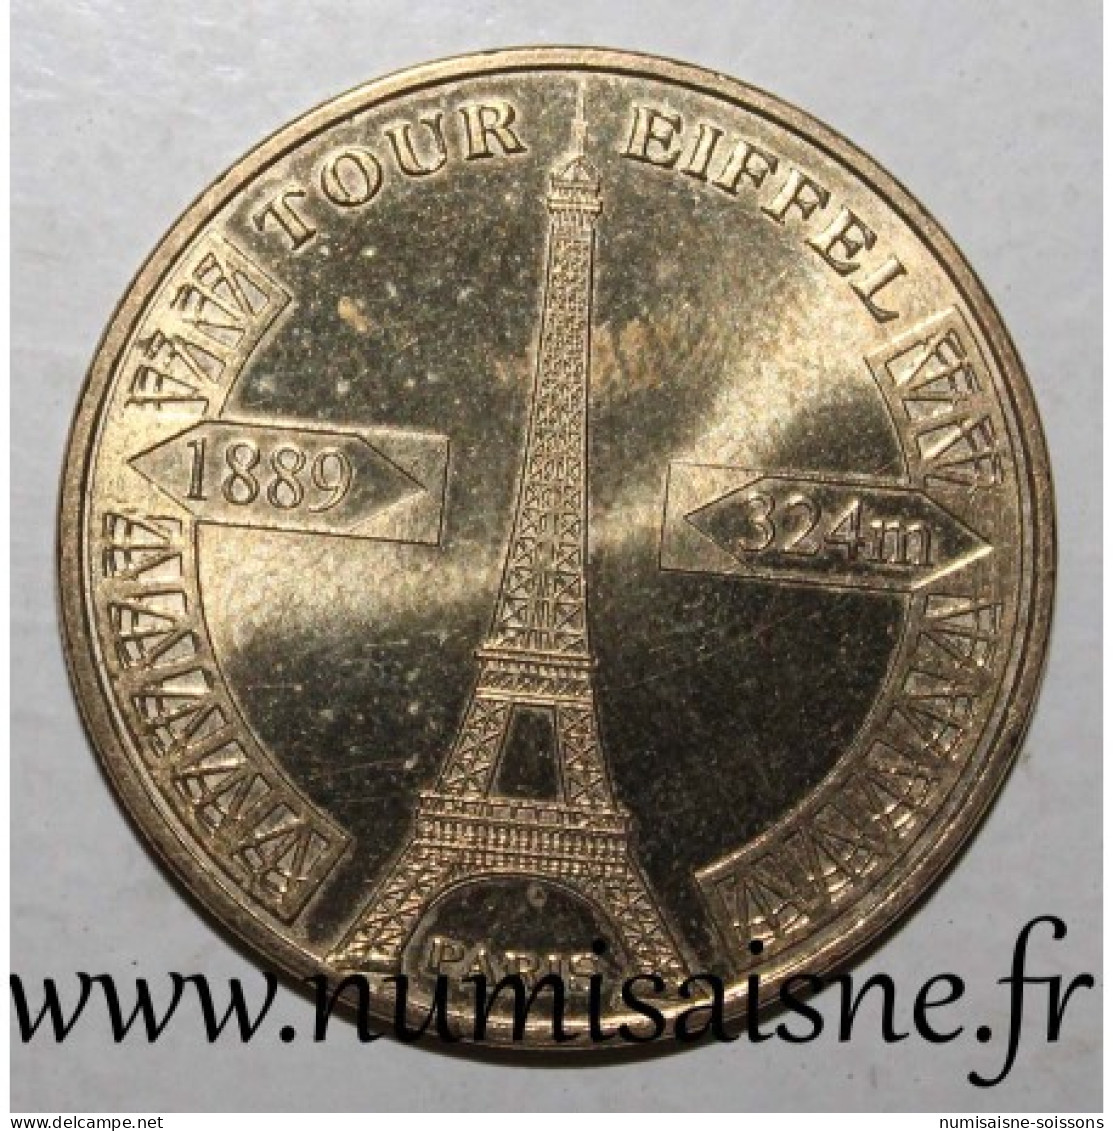 75 - PARIS - TOUR EIFFEL - 1889 - 324 M - REVERS 1 - MDP - 2008 - 2008